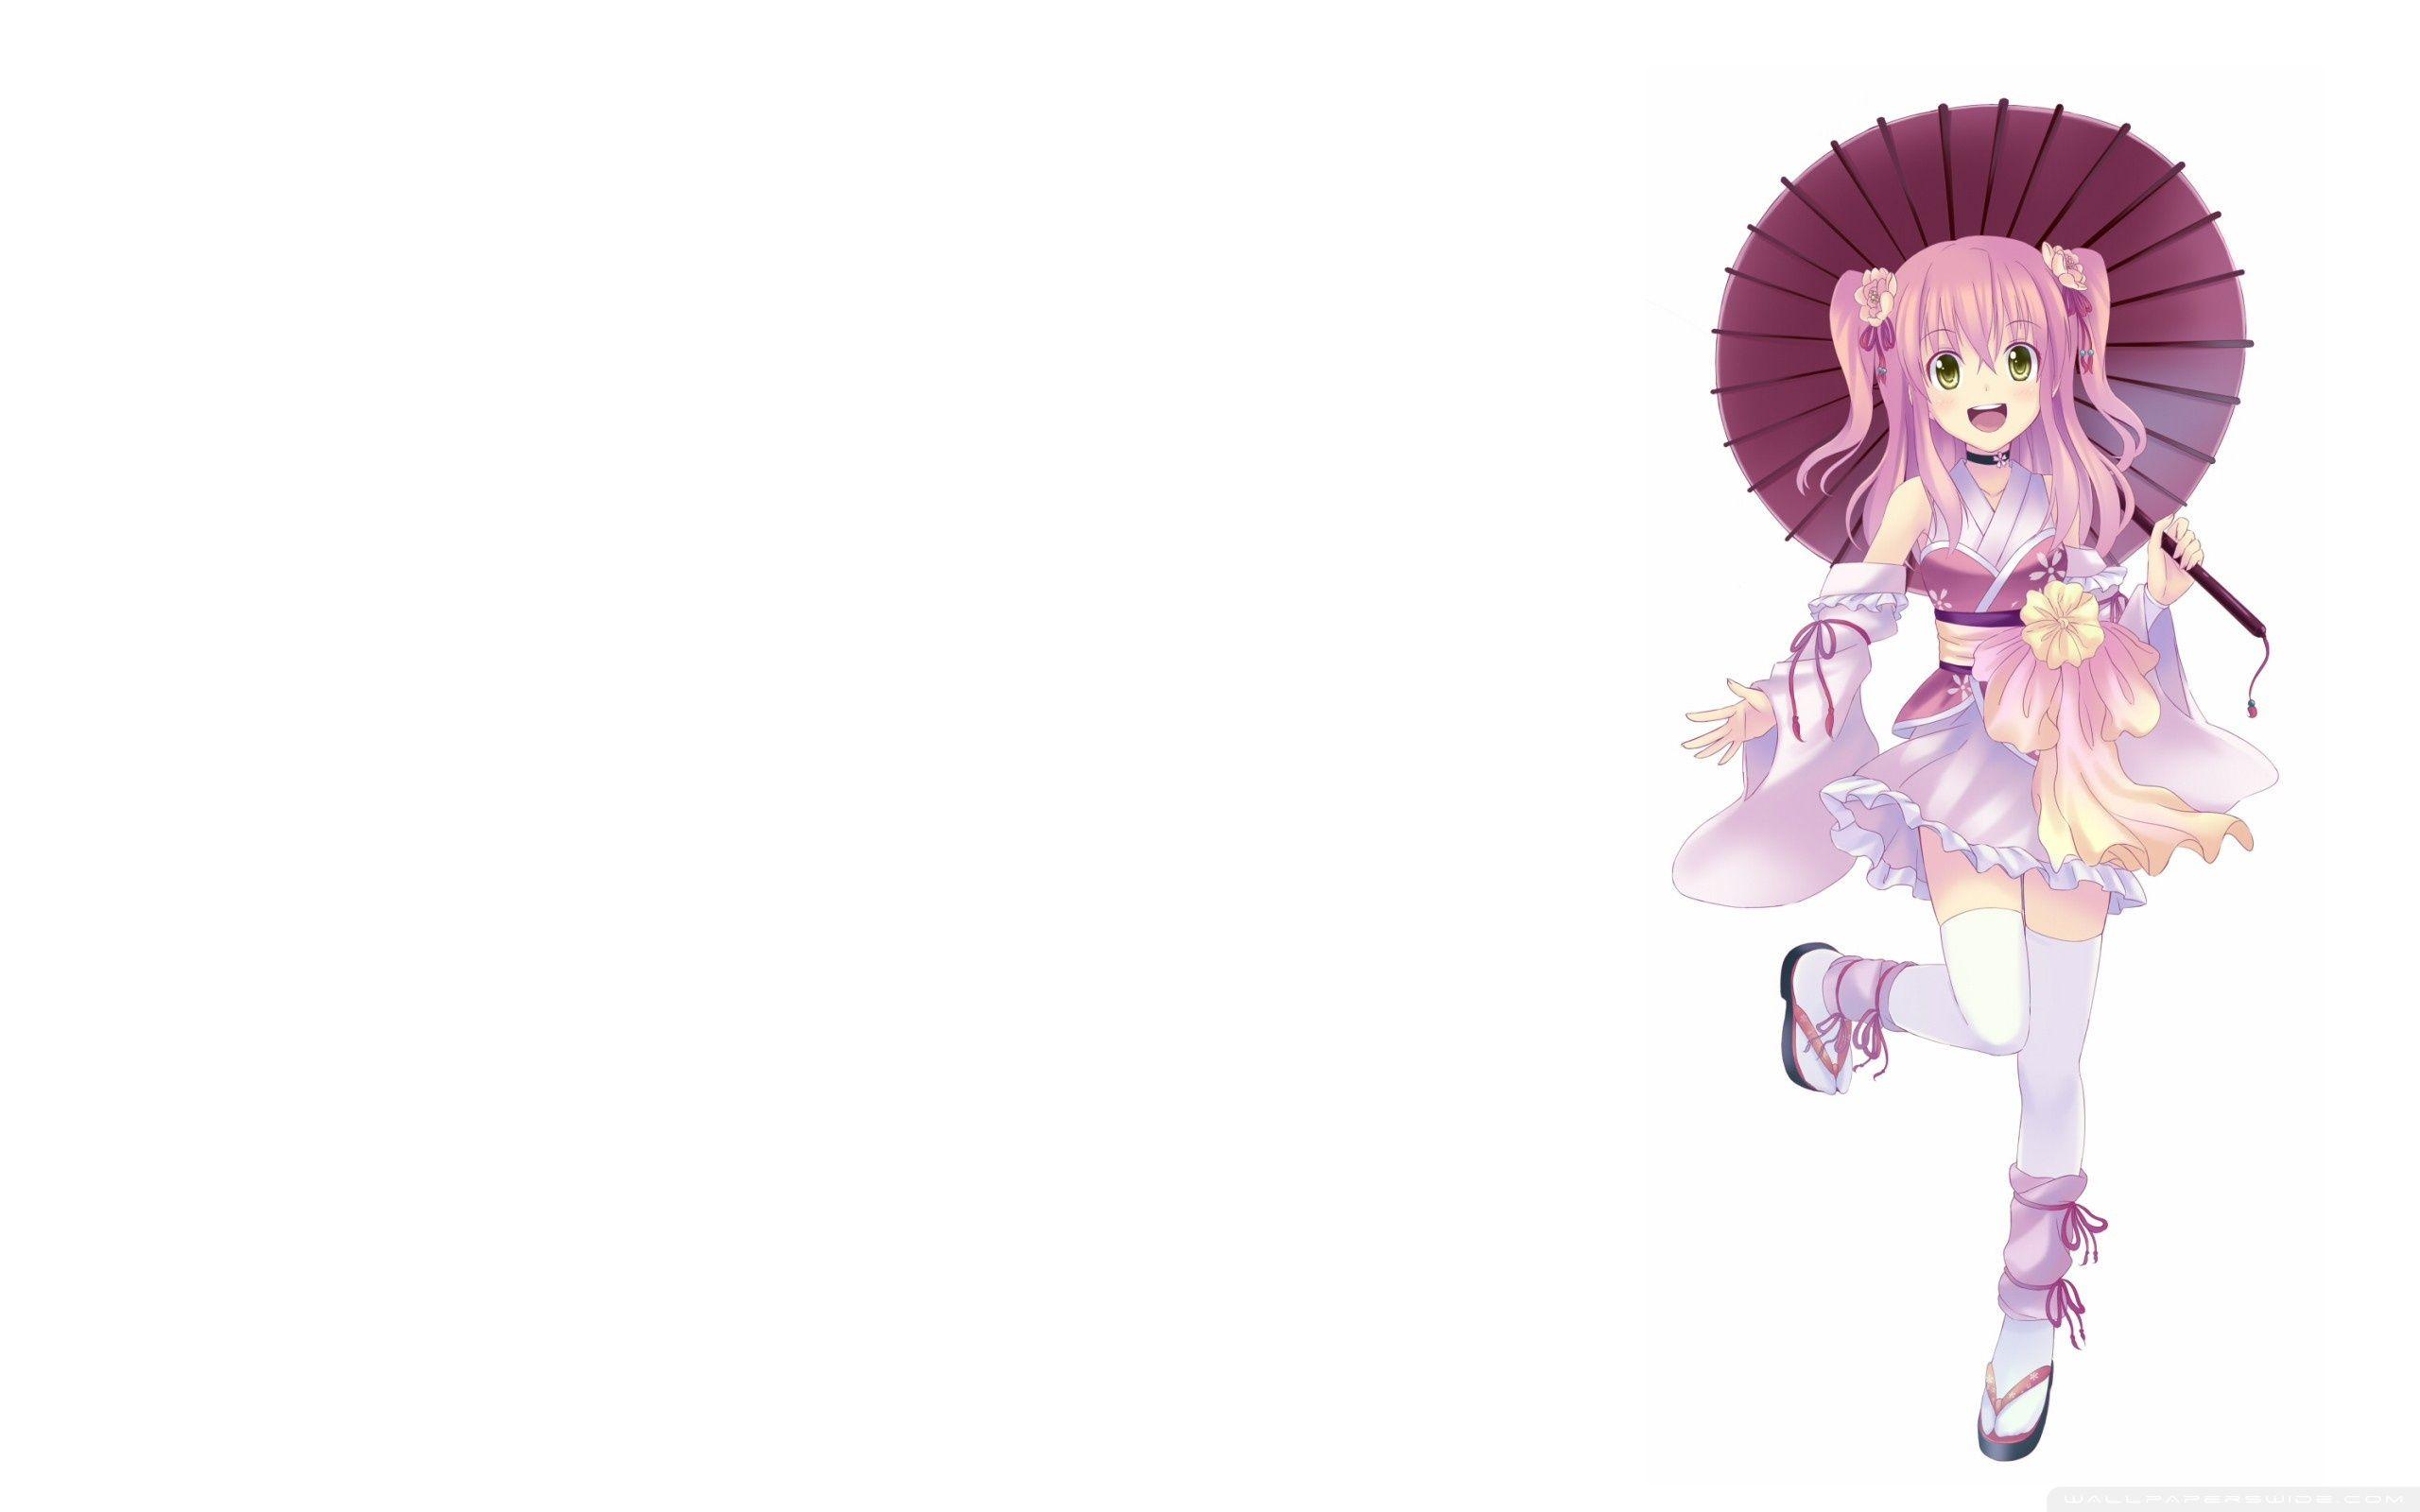 Japanese Anime Girl Ultra HD Desktop Background Wallpaper for 4K